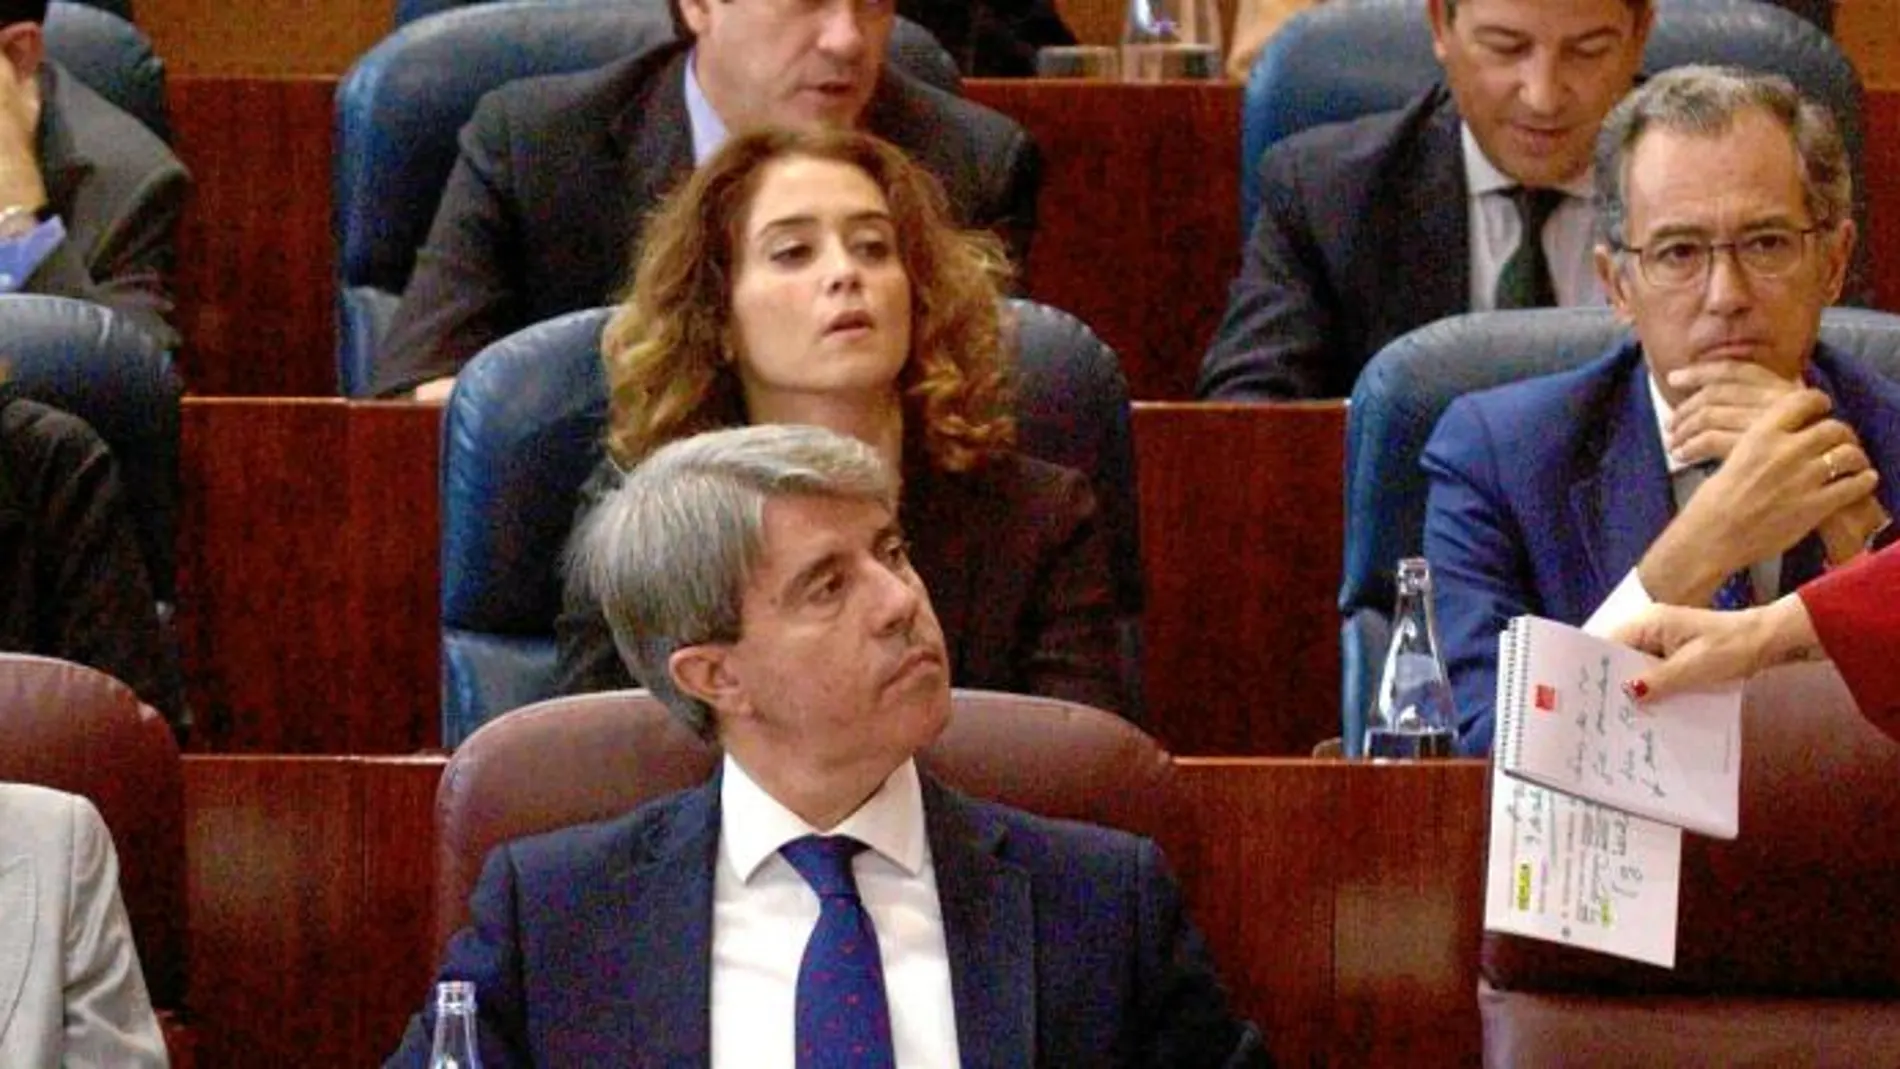 Los diputados del PP, González Moñux (arriba izda.) y Osorio (arriba dcha.), se están cruzando denuncias en los tribunales